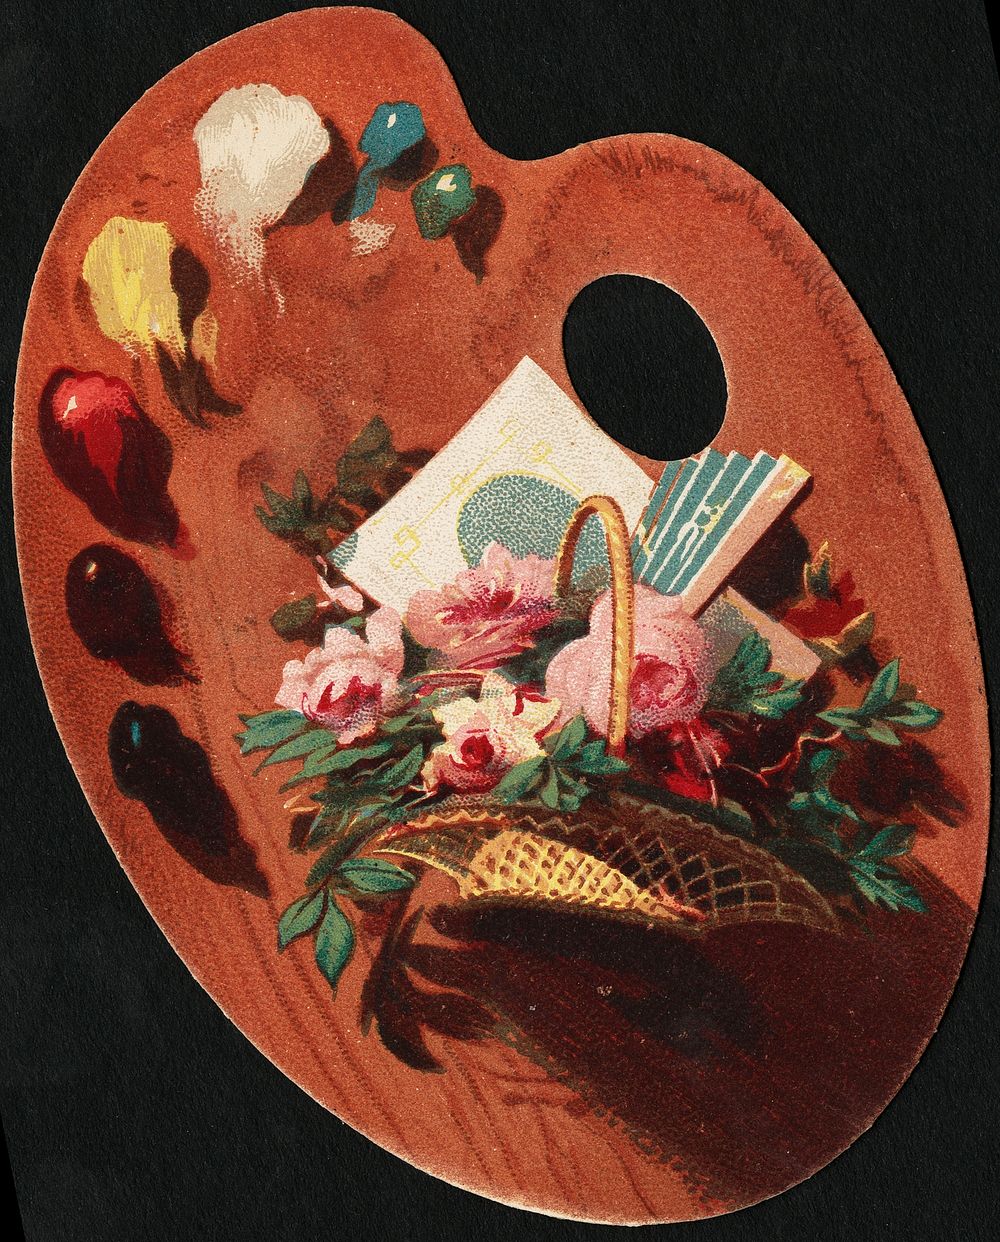             A basket full of flowers, with a fan folded in it.          